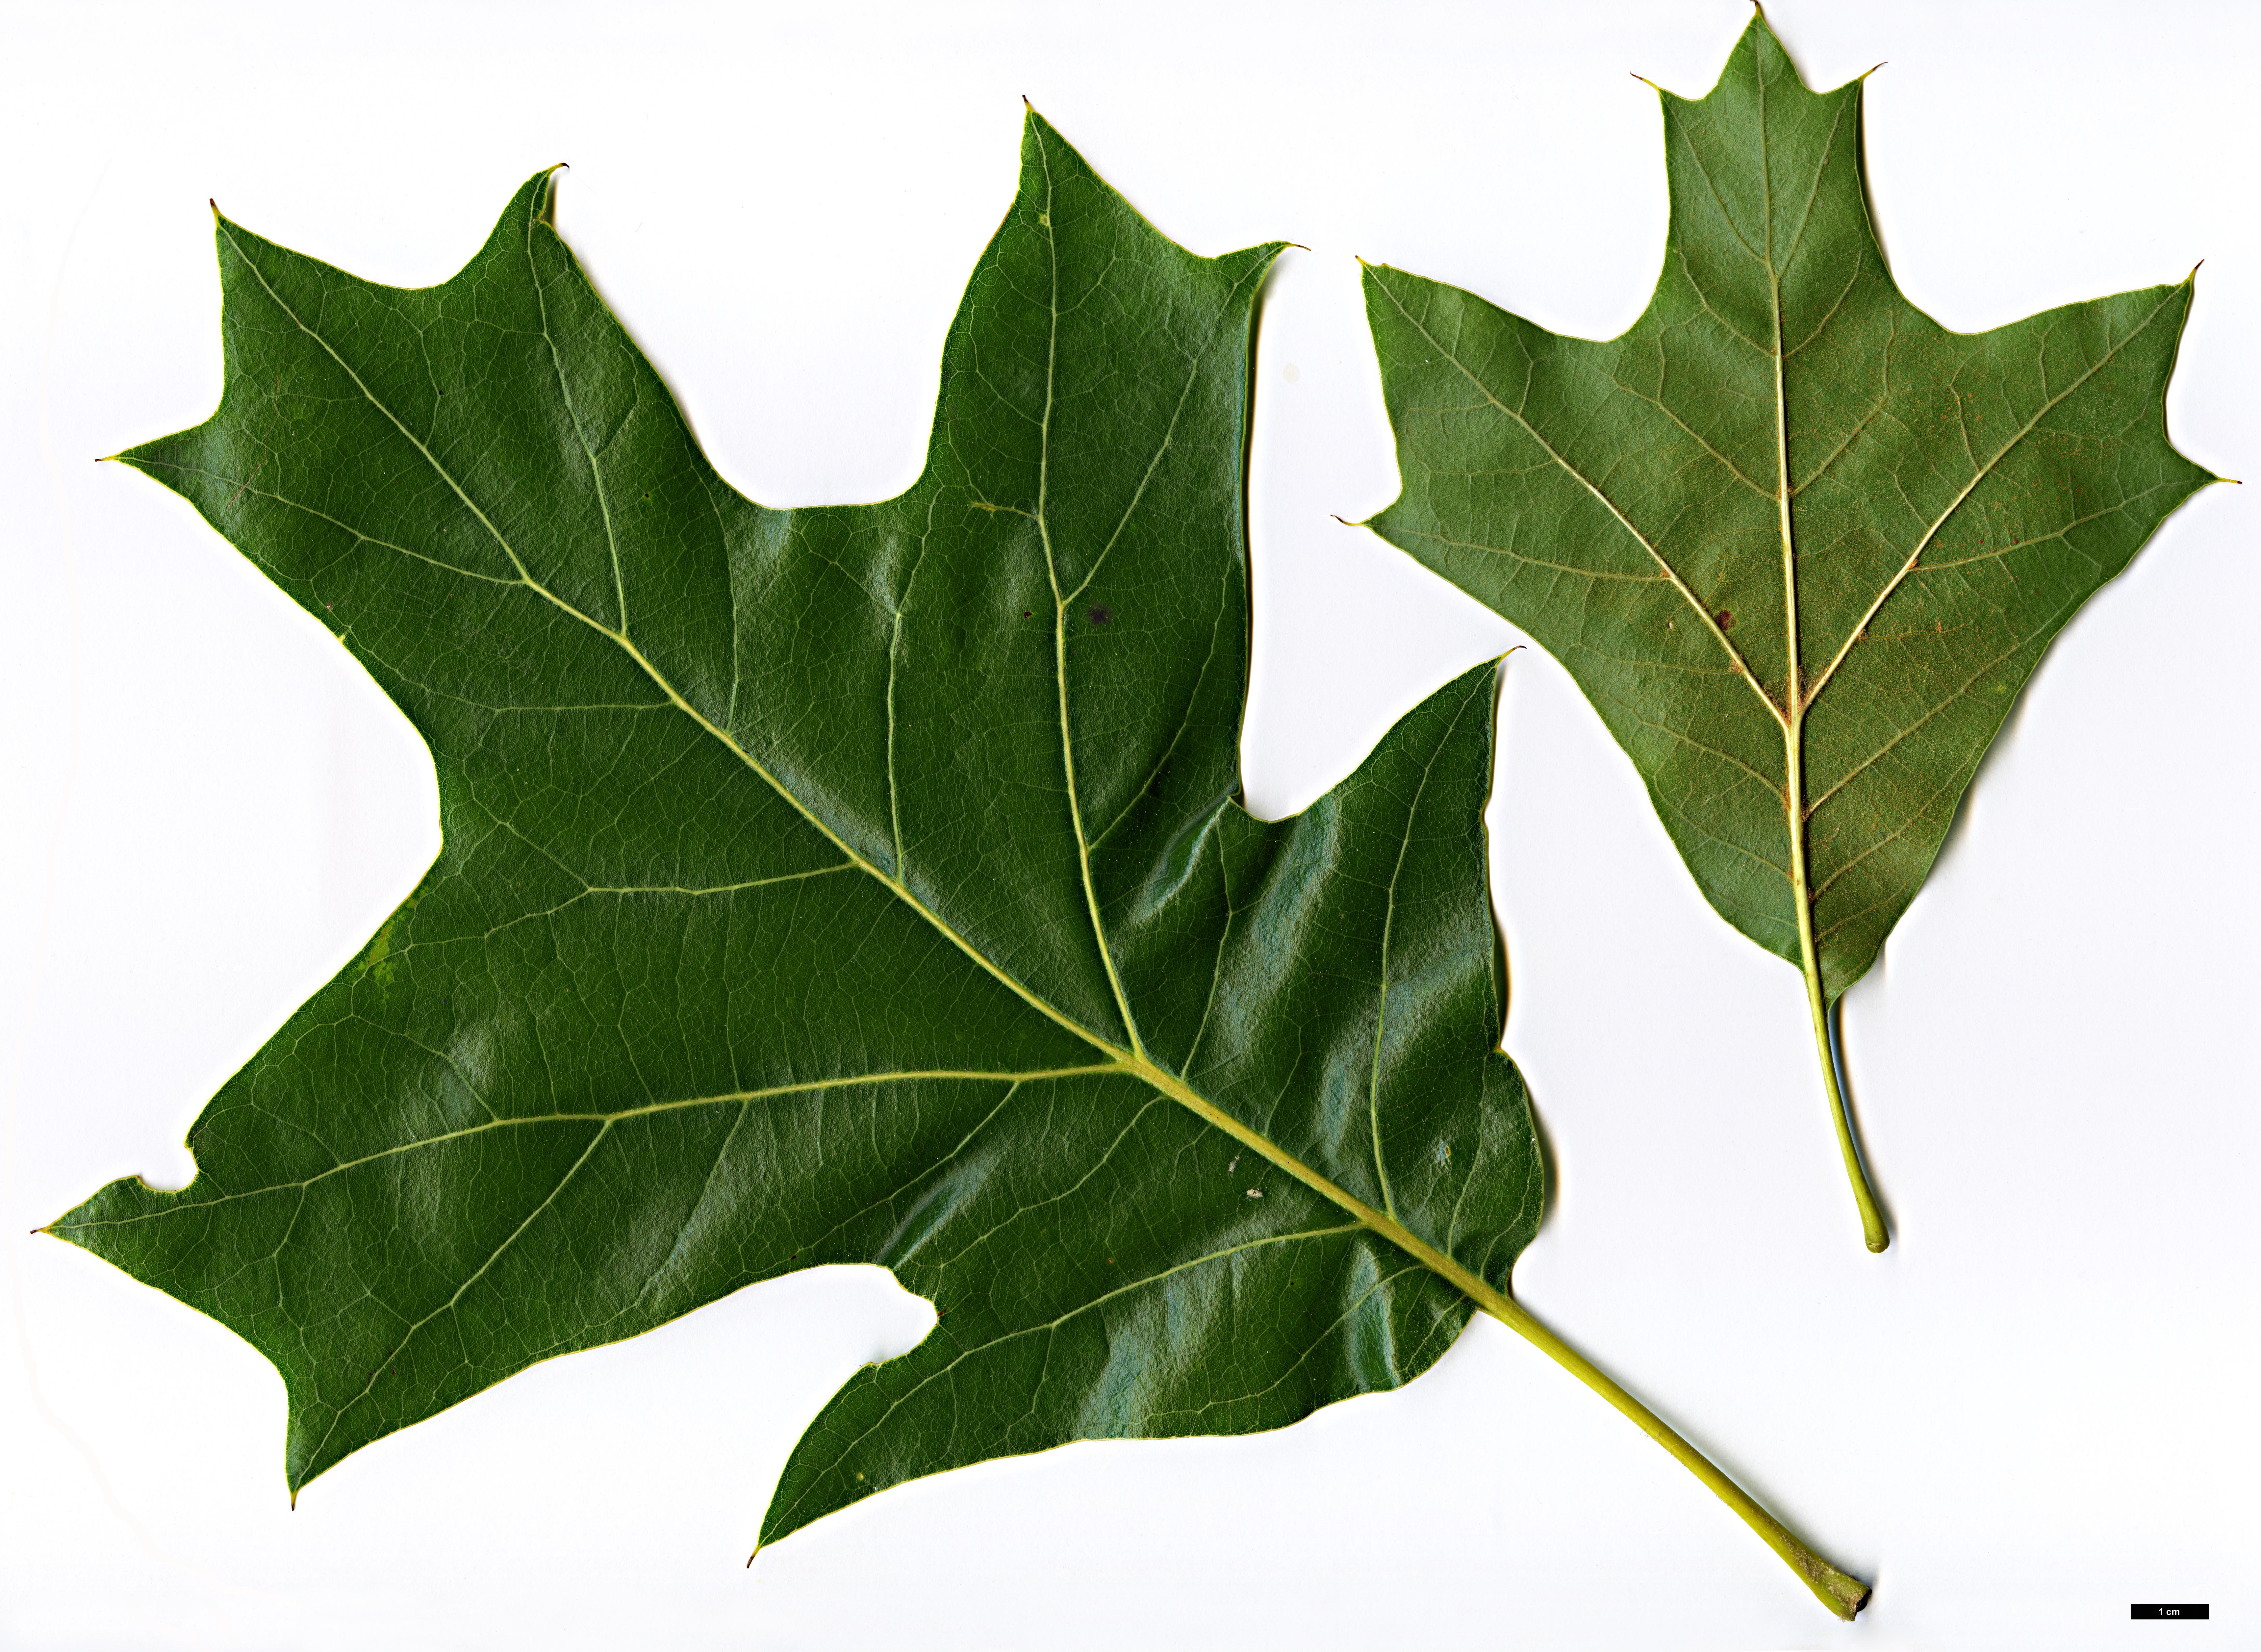 High resolution image: Family: Fagaceae - Genus: Quercus - Taxon: ×bushii (Q.marilandica × Q.velutina)